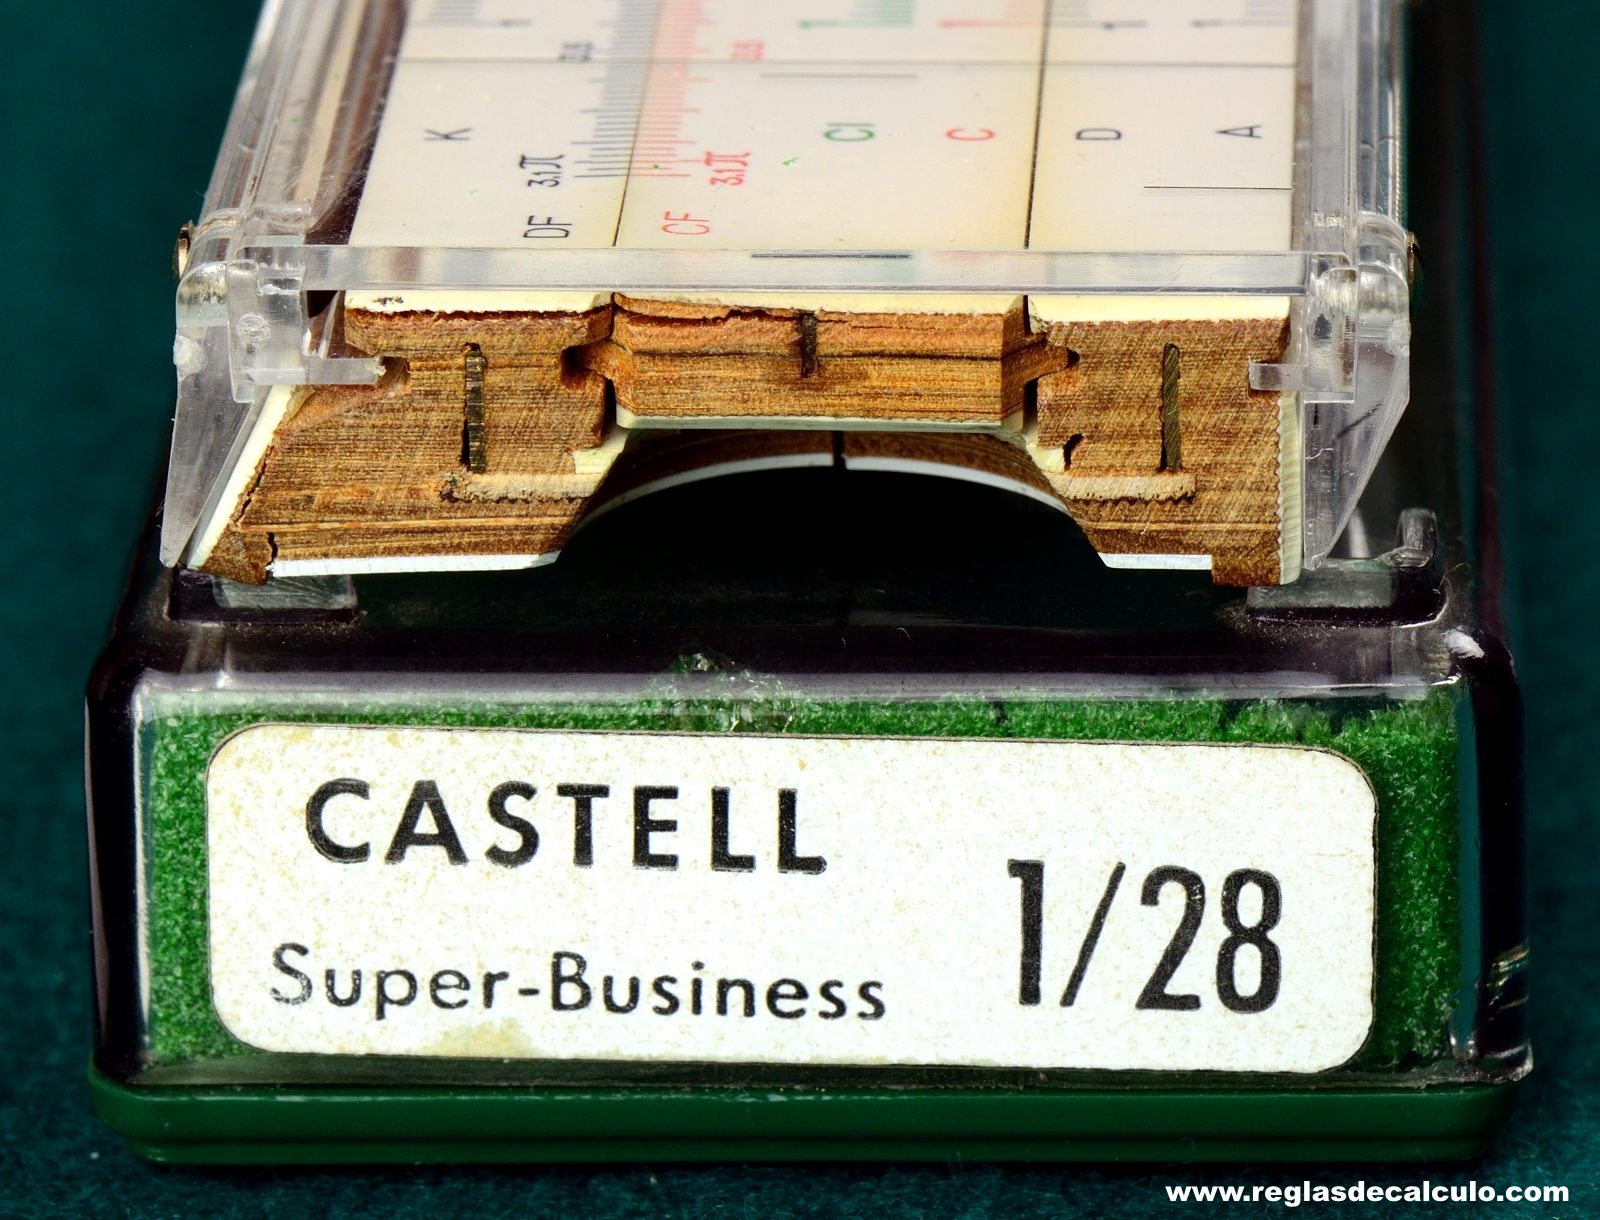 Regla de Calculo Slide rule Faber Castell 1/28 Super_Business